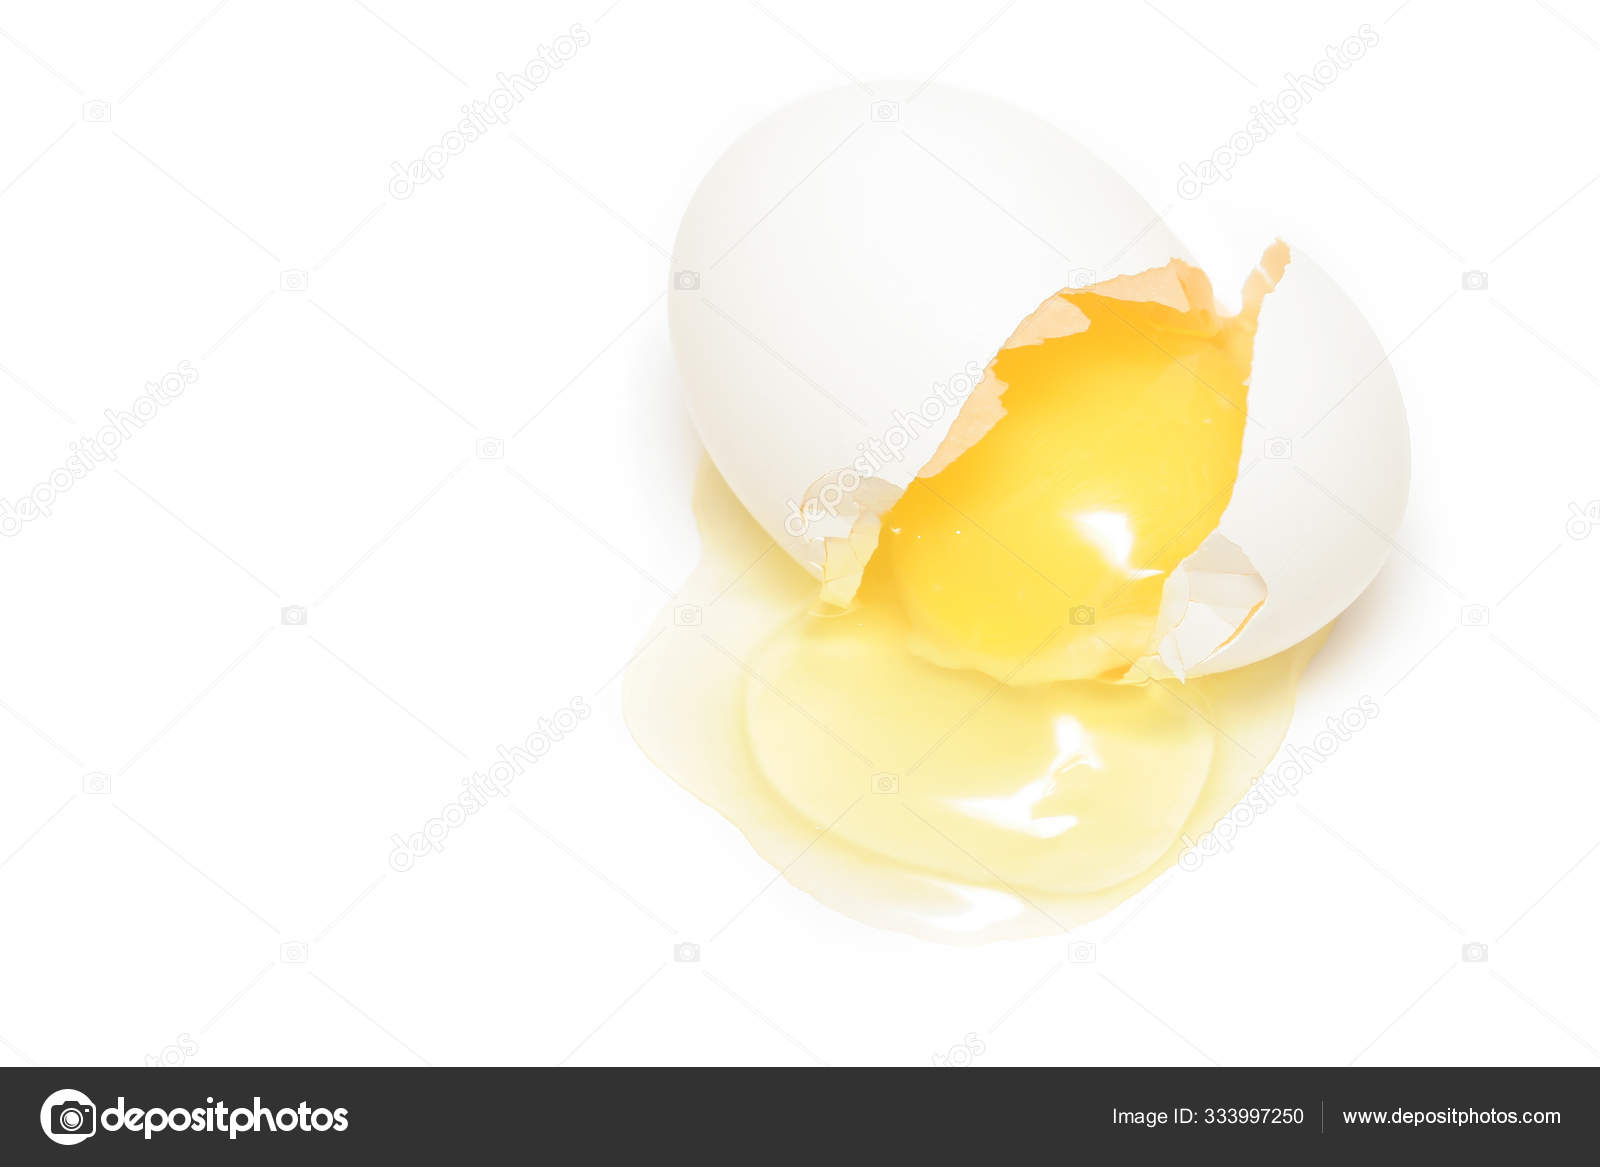 Кремовые яйца. Яйцо с трещиной. Яйцо с трещиной на белом фоне. Зеленое яйцо треснутое на белом фоне. Взбивание яйца клипарт.